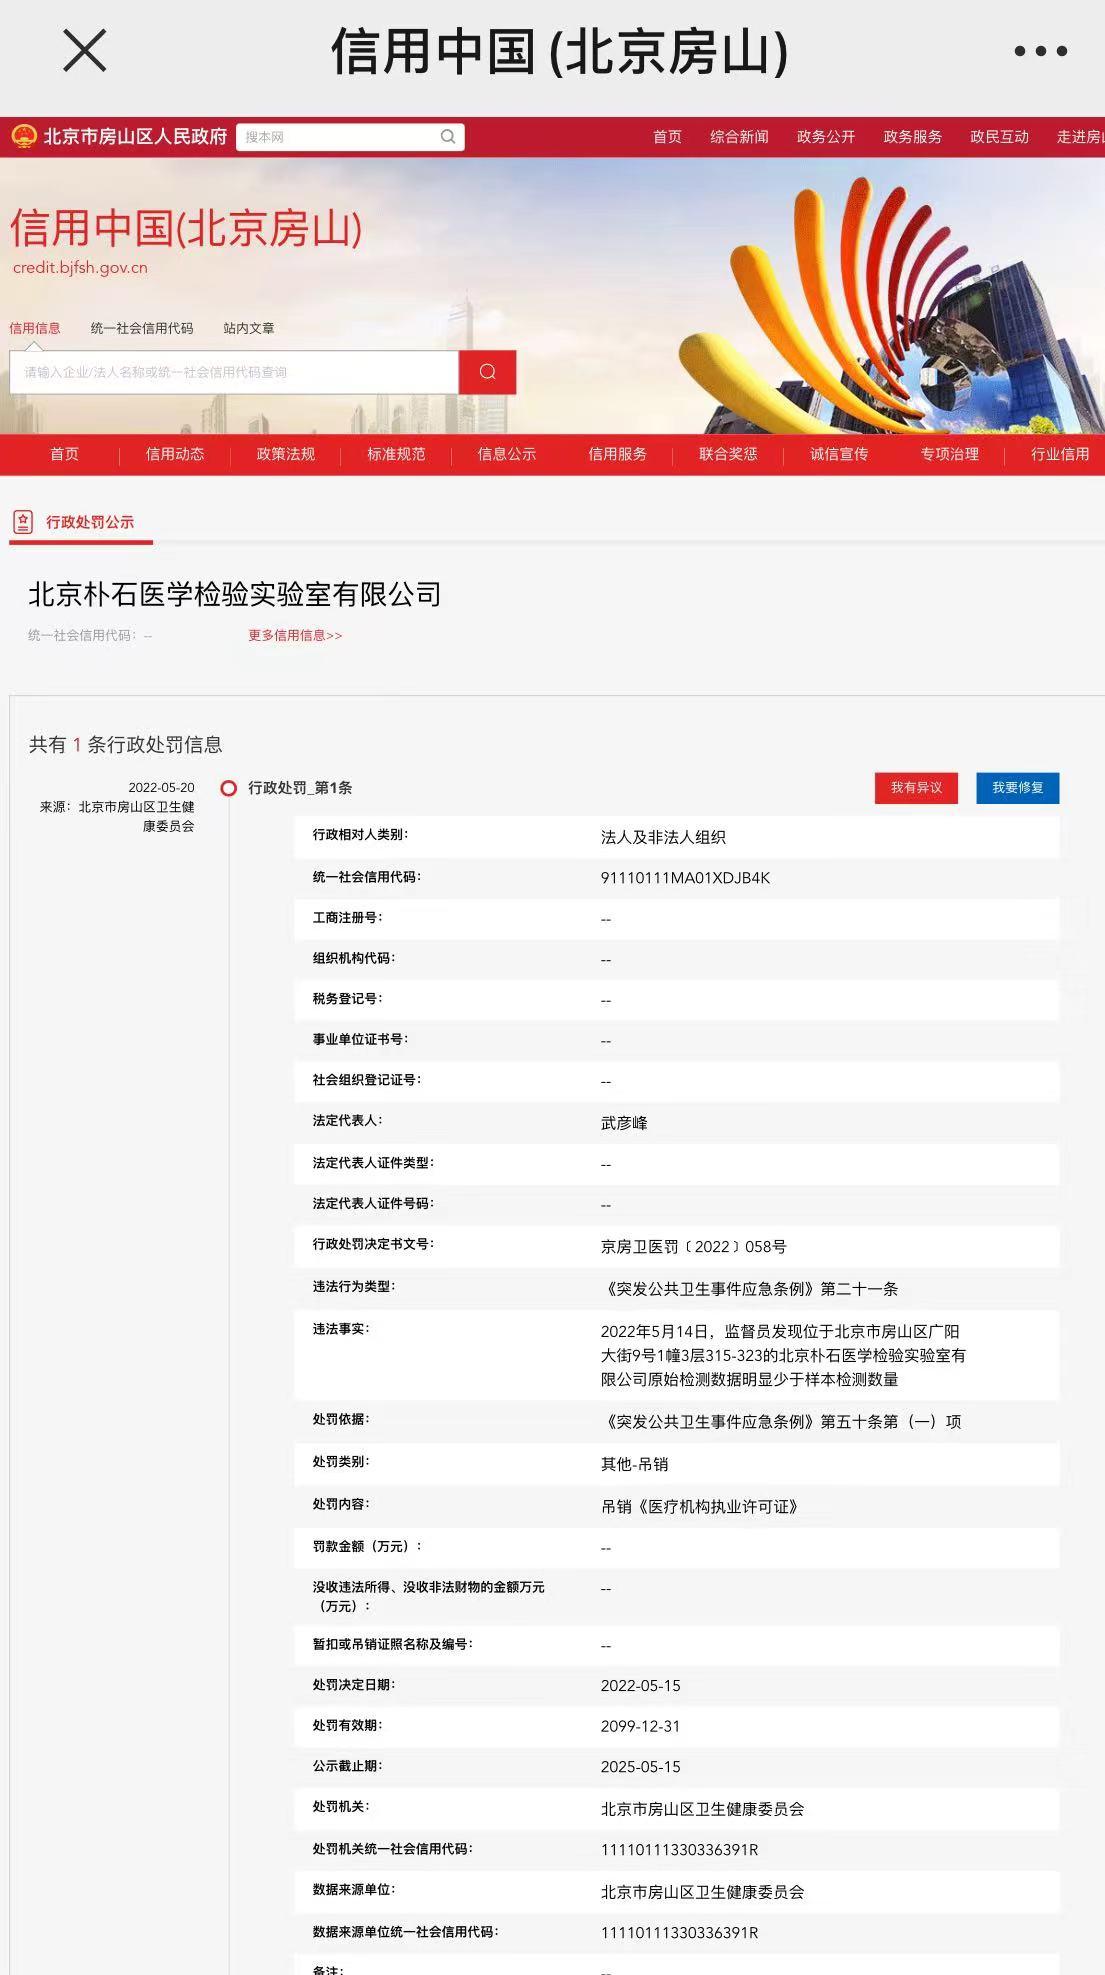 北京一检验实验室被吊销执业<font color="red">许可证</font>：原始检测数据少于样本数量